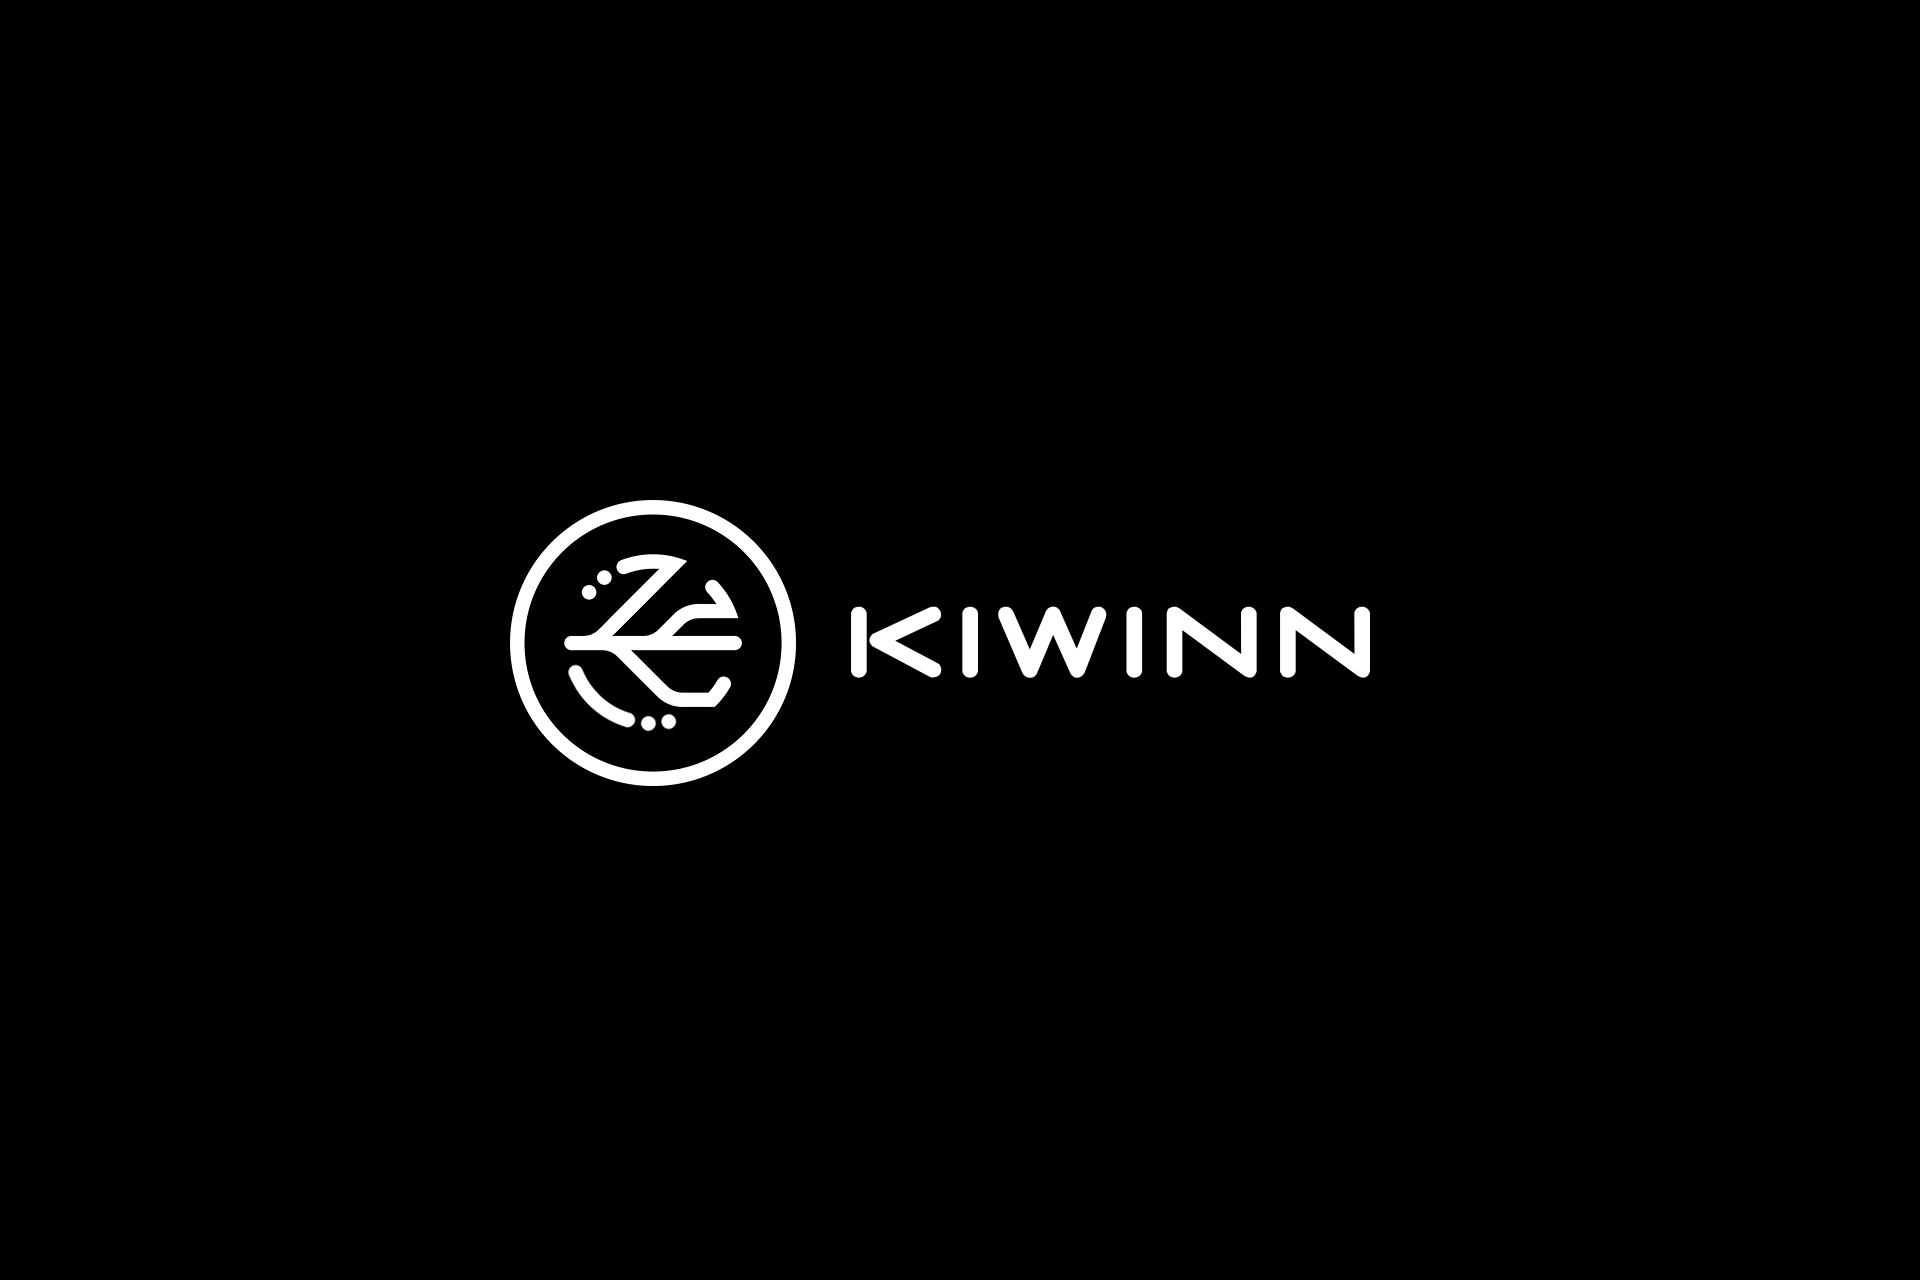 Logo kanadyjskiej marki akcesoriów telefonicznych i komputerowych Kiwinn